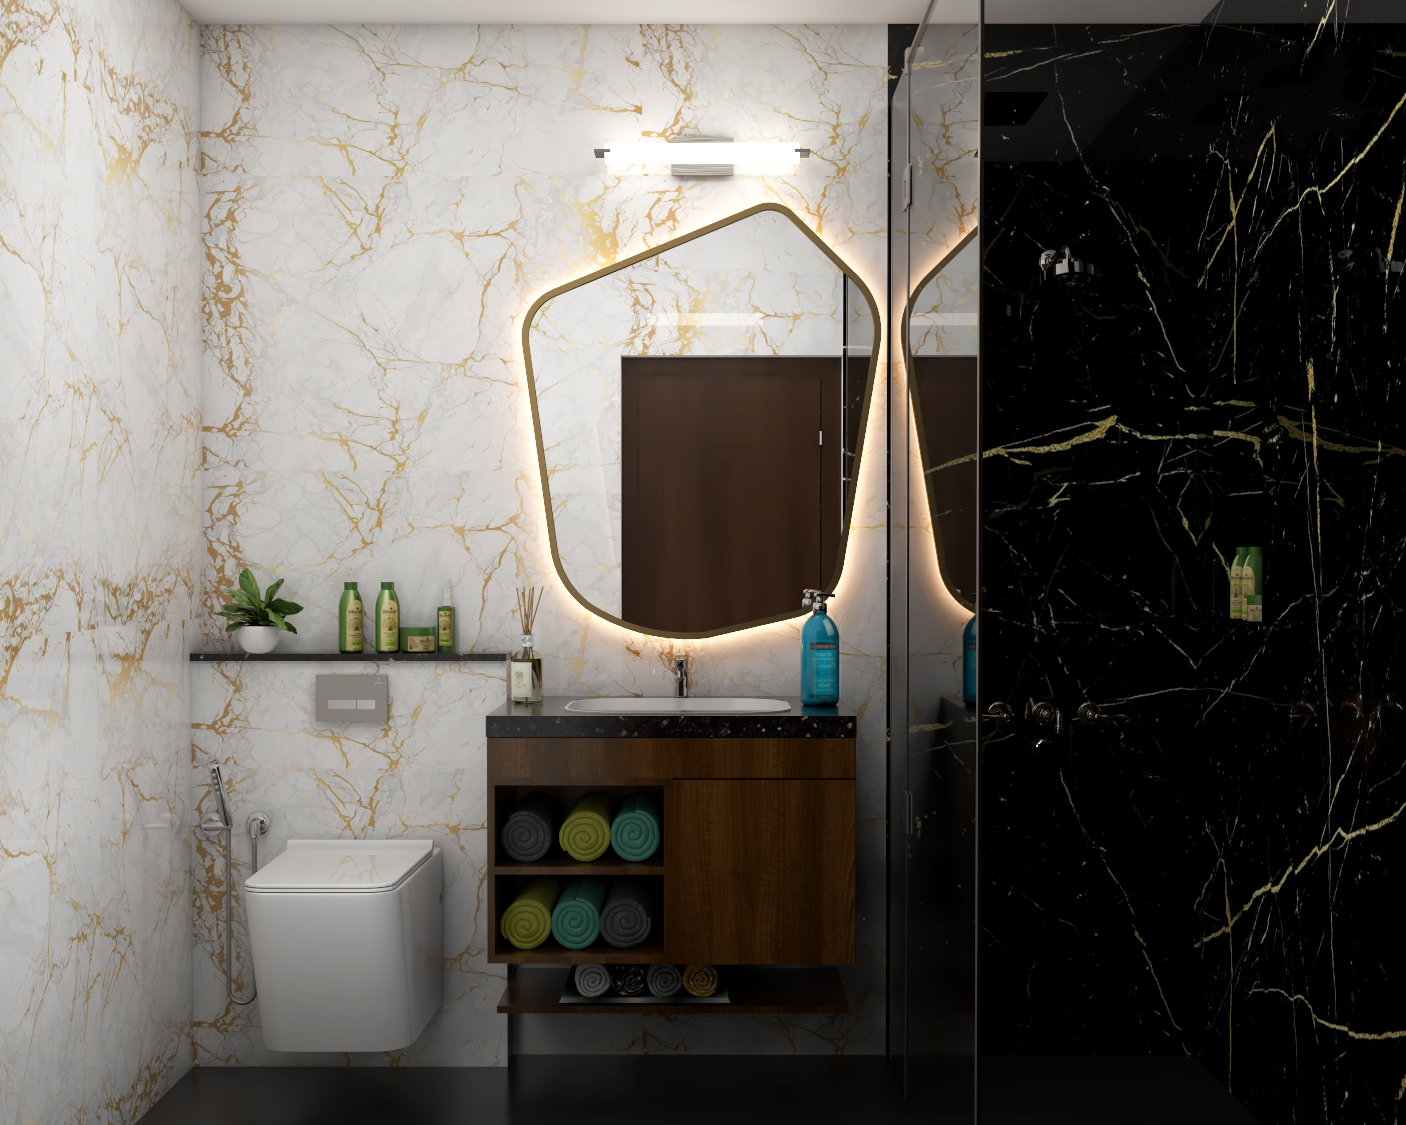 Contemporary Compact Bathroom Design With Mirror